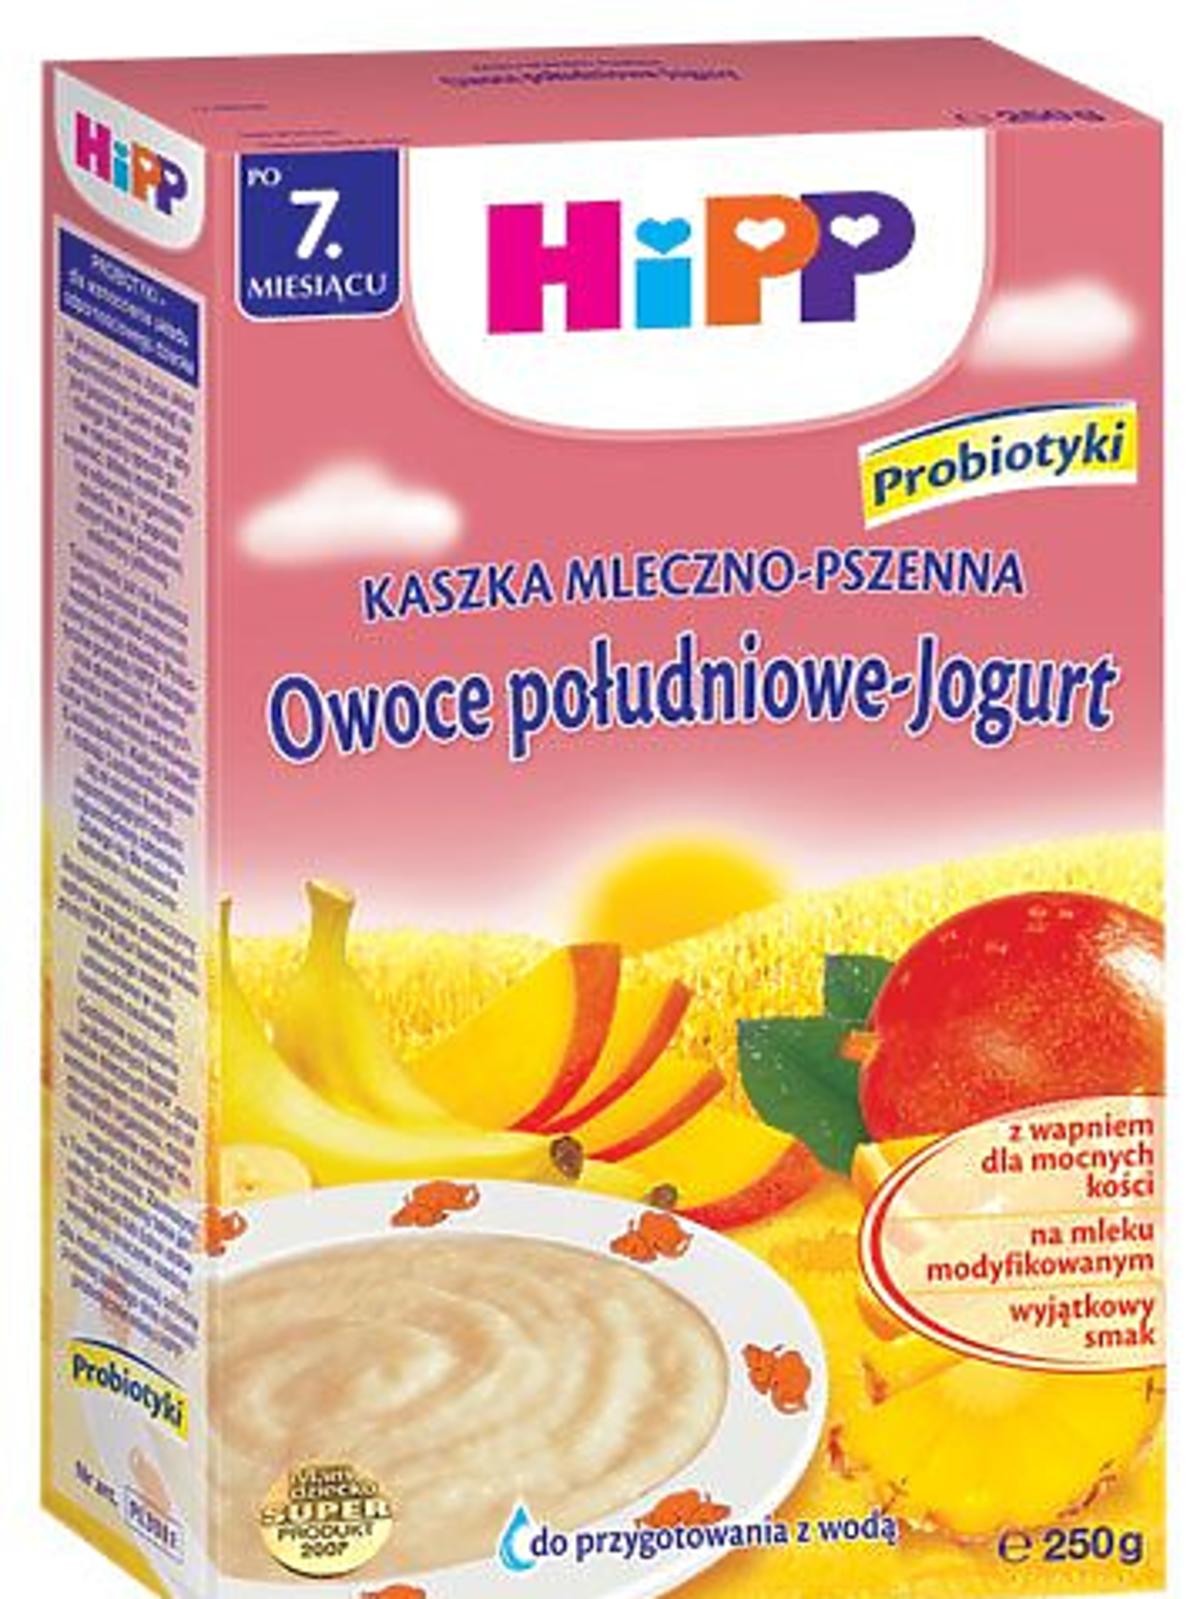 KASZKA_MP_jogurt_owoce_polu.jpg